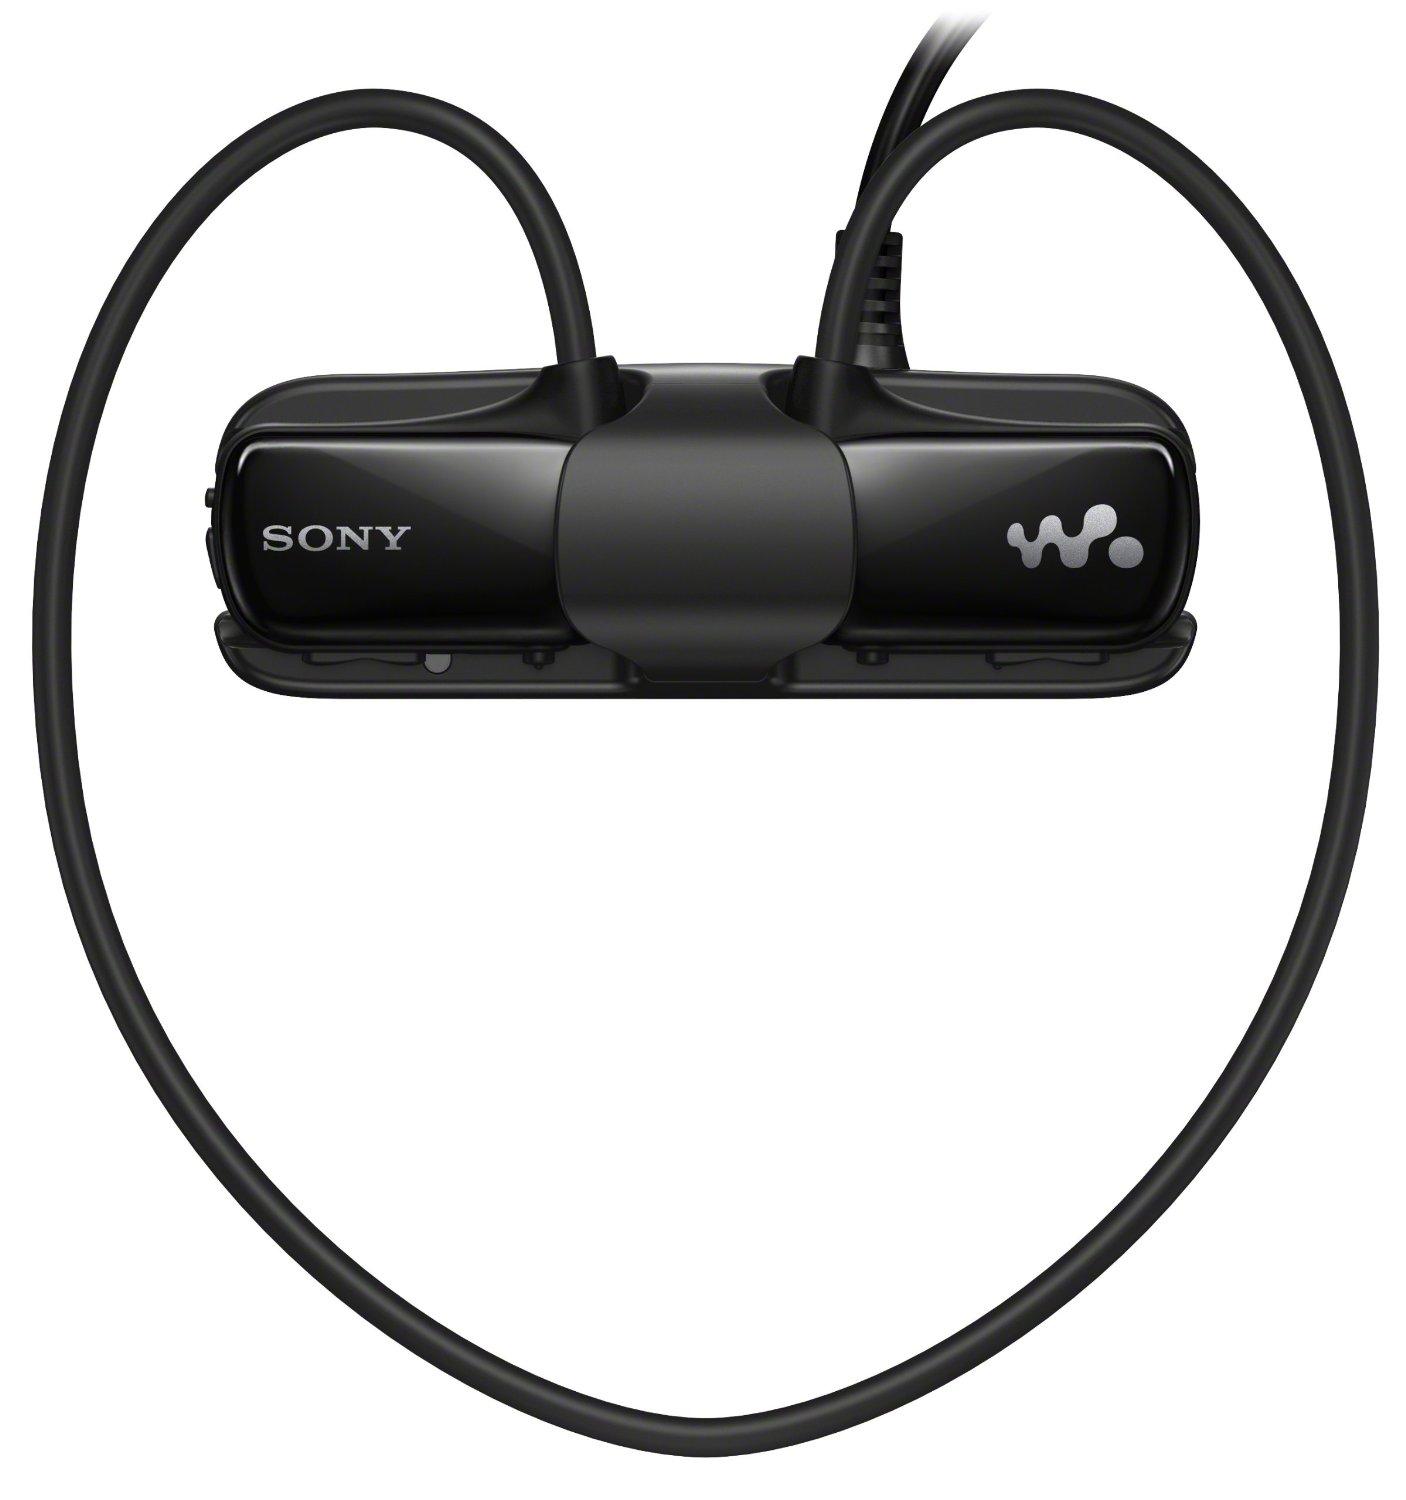 Cáp sạc máy nghe nhạc Sony NWZ-W273S